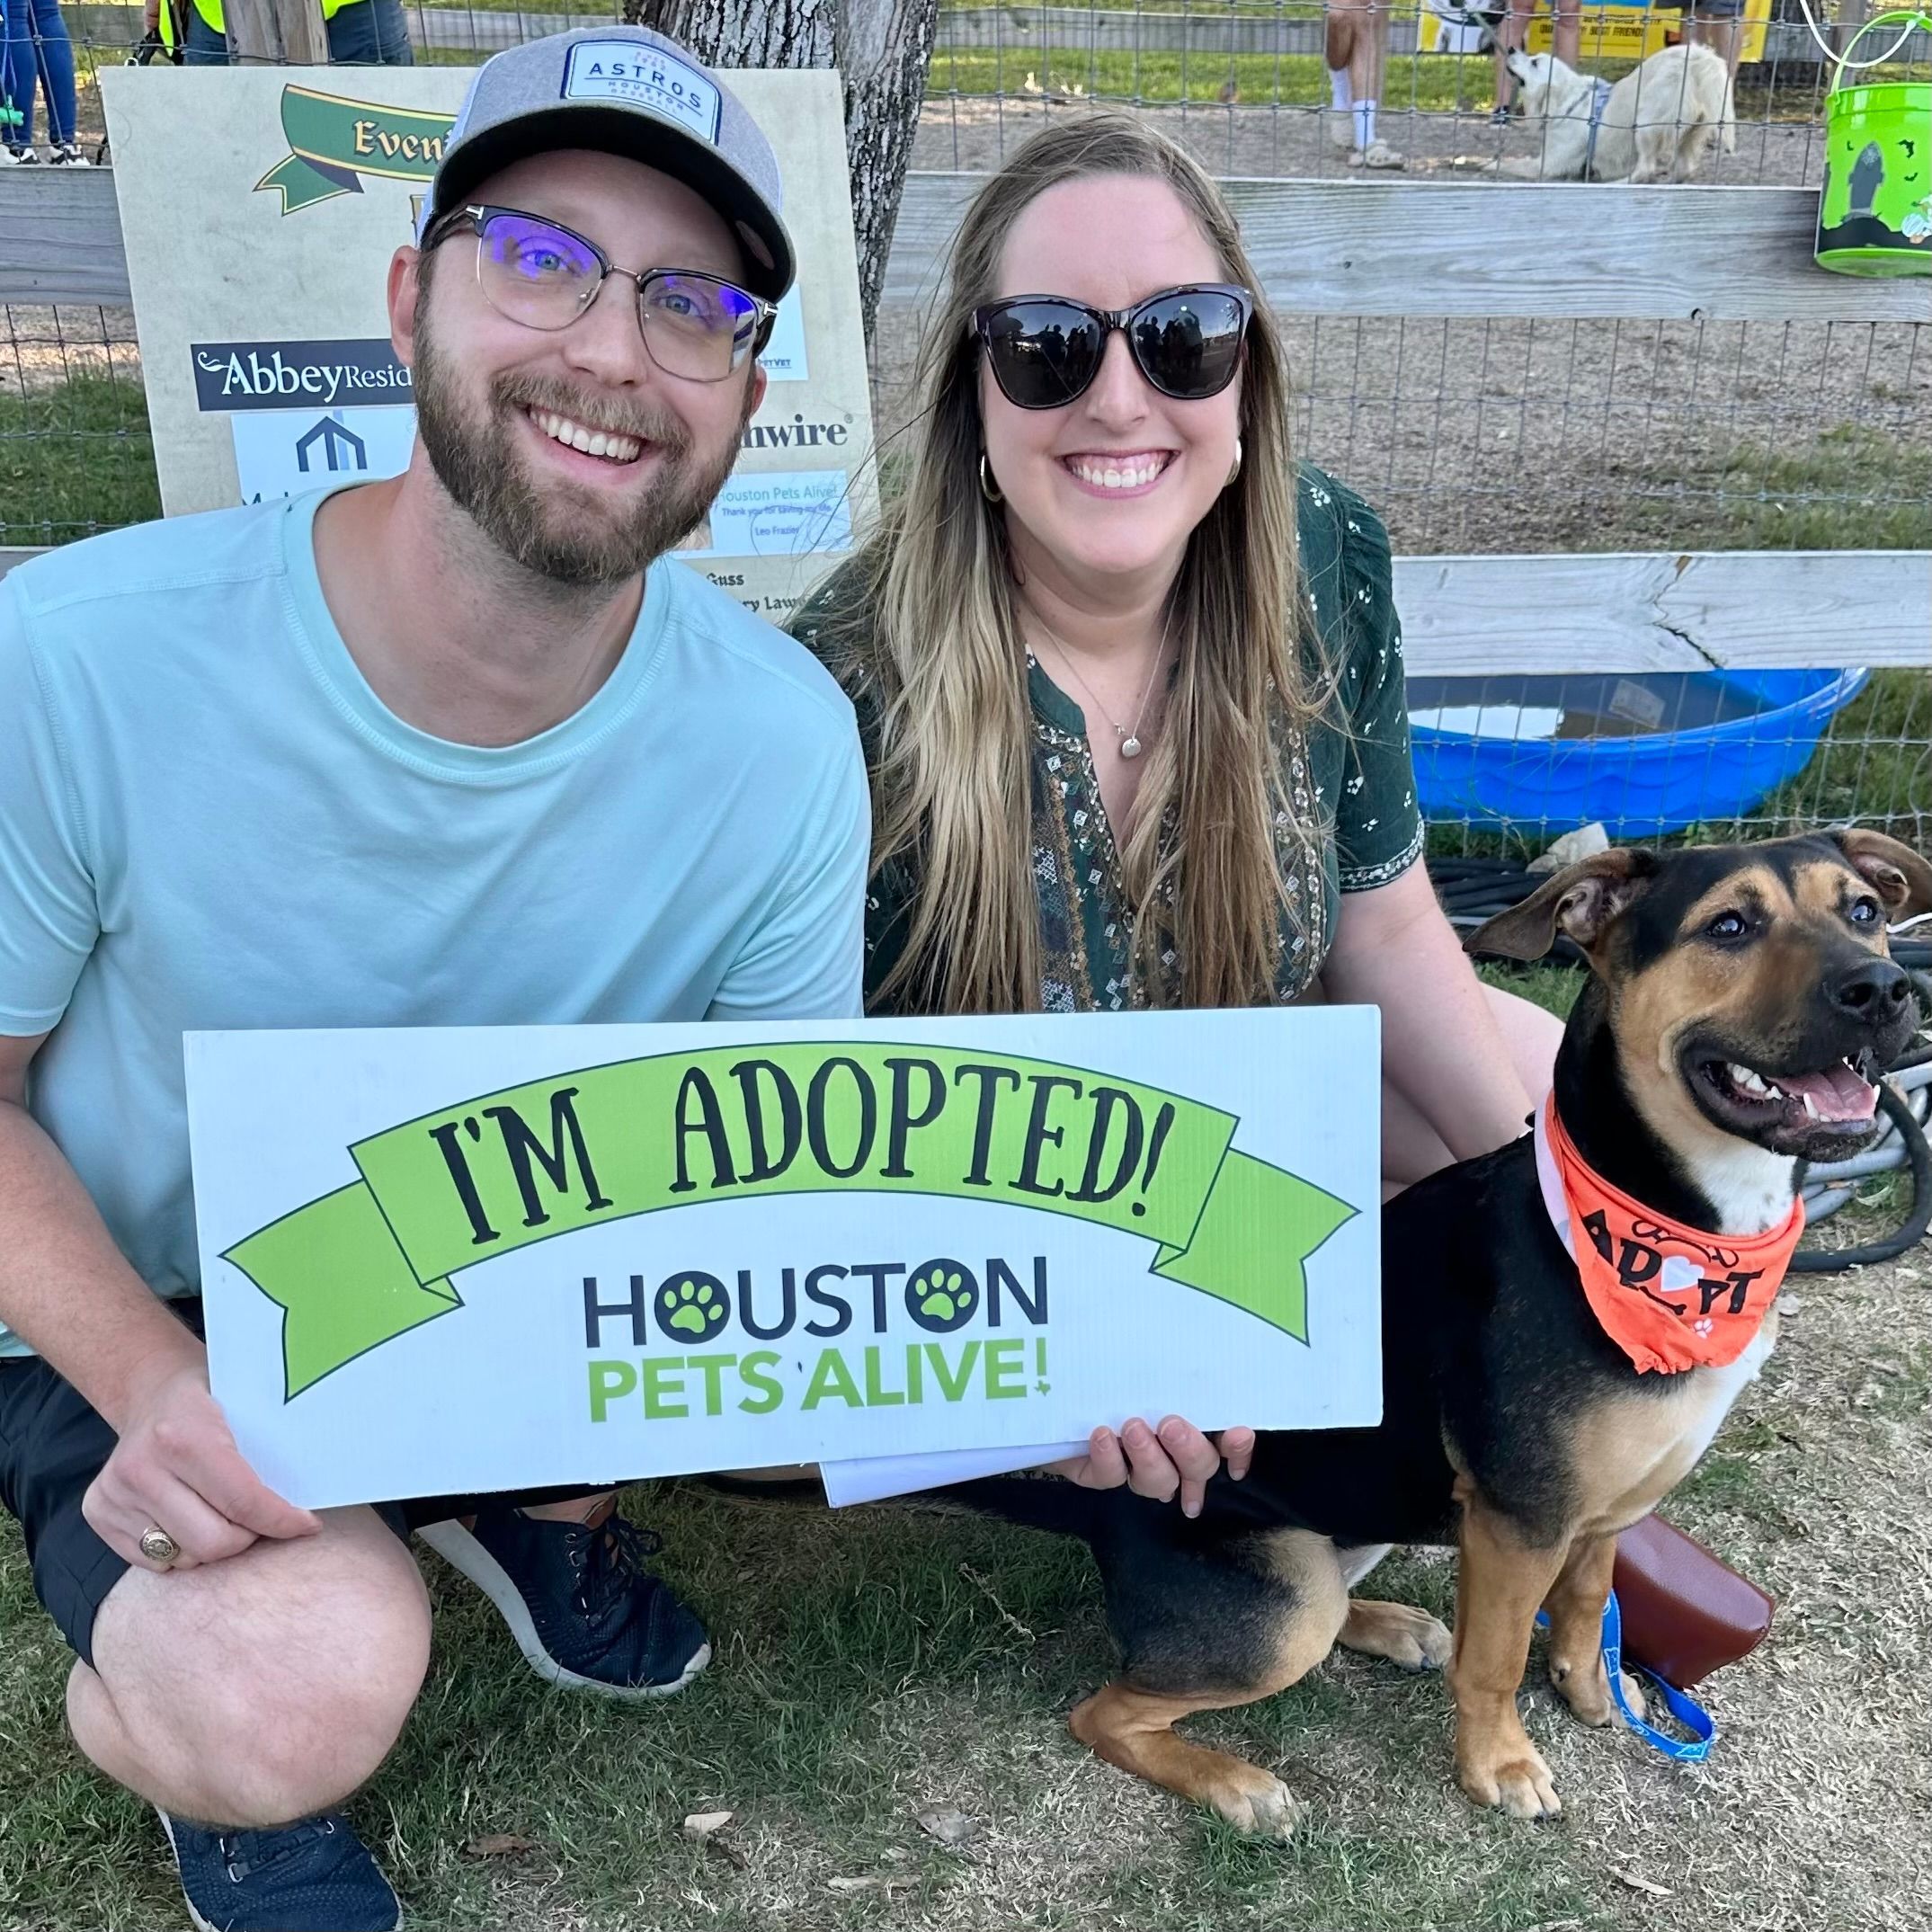 Houston Pets Alive!